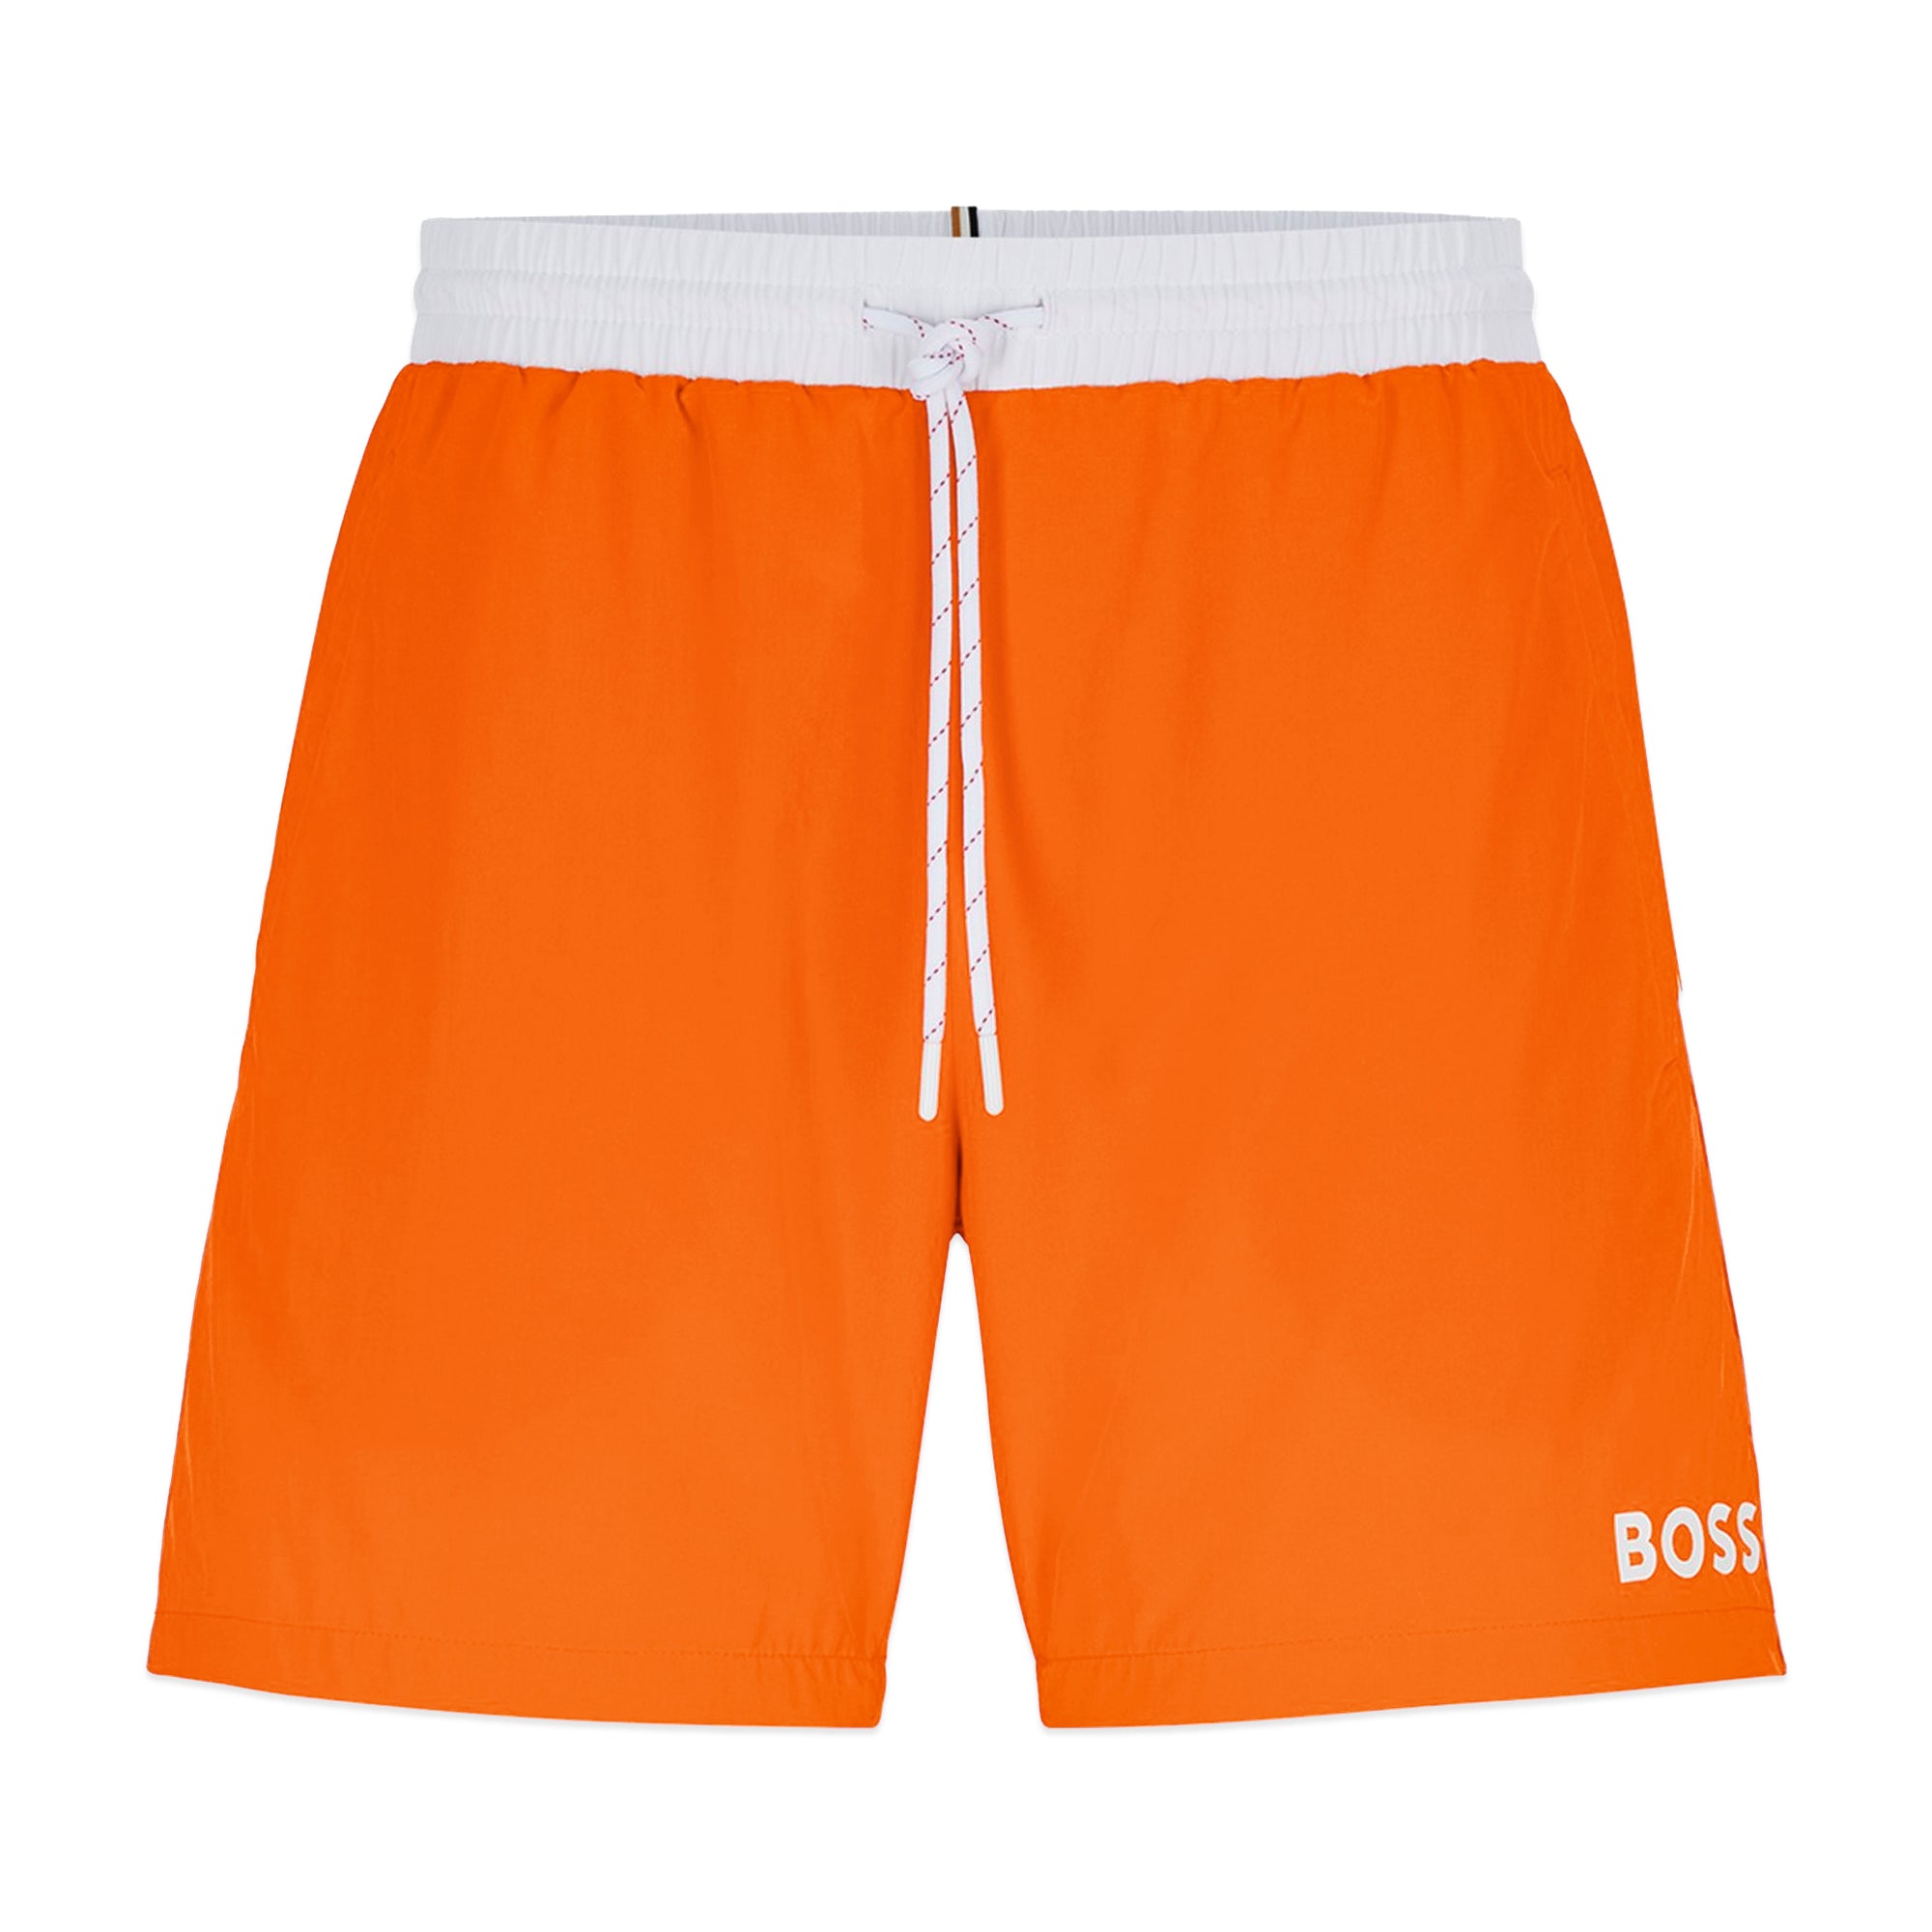 Boss Starfish Swim Short - Bright Orange